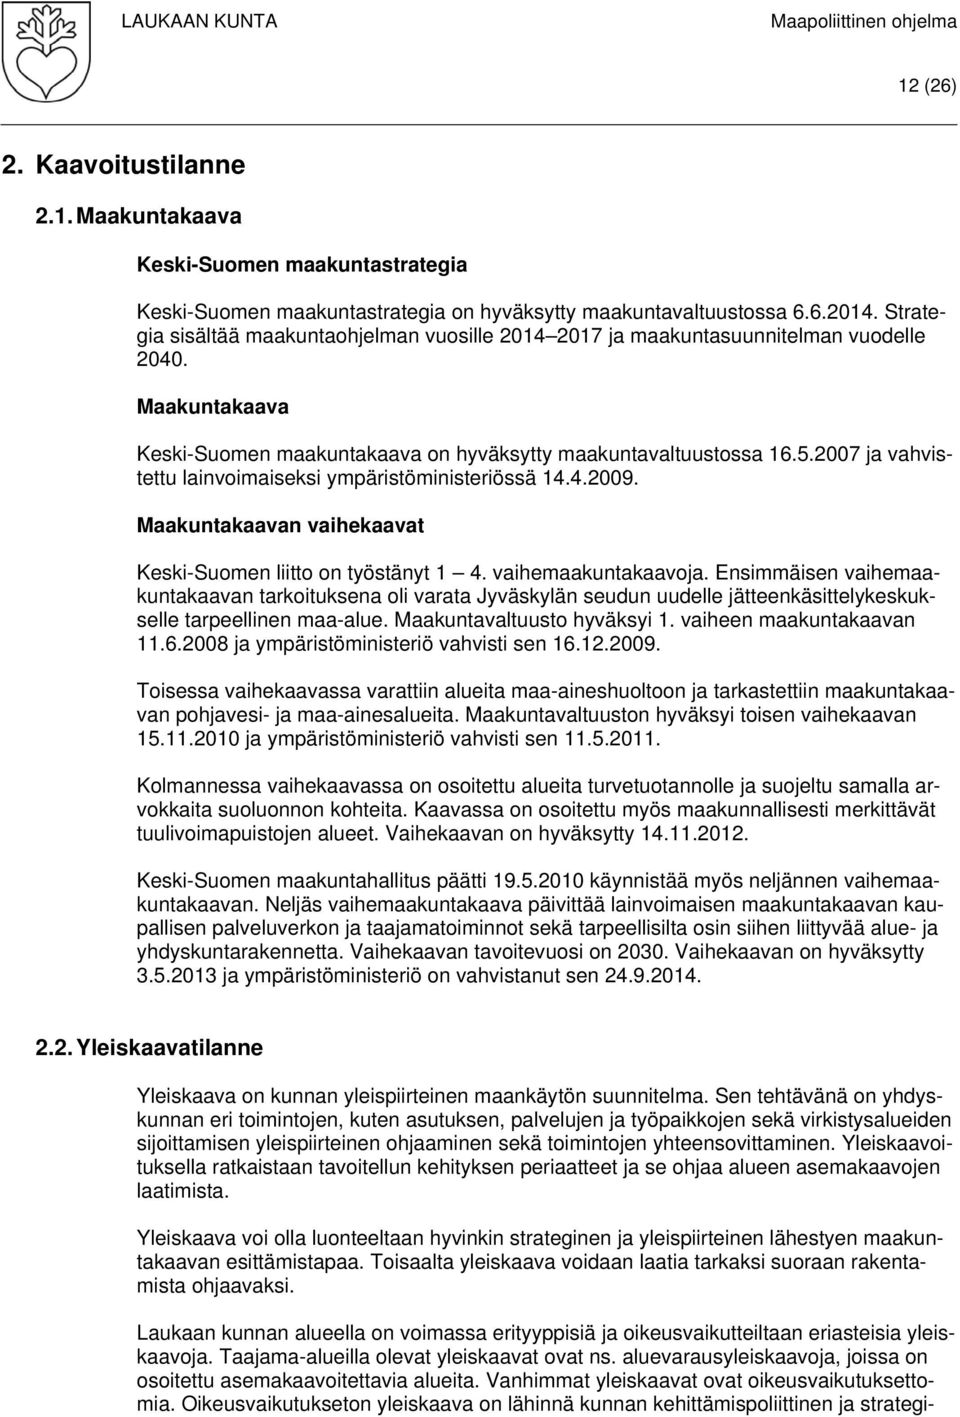 2007 ja vahvistettu lainvoimaiseksi ympäristöministeriössä 14.4.2009. Maakuntakaavan vaihekaavat Keski-Suomen liitto on työstänyt 1 4. vaihemaakuntakaavoja.